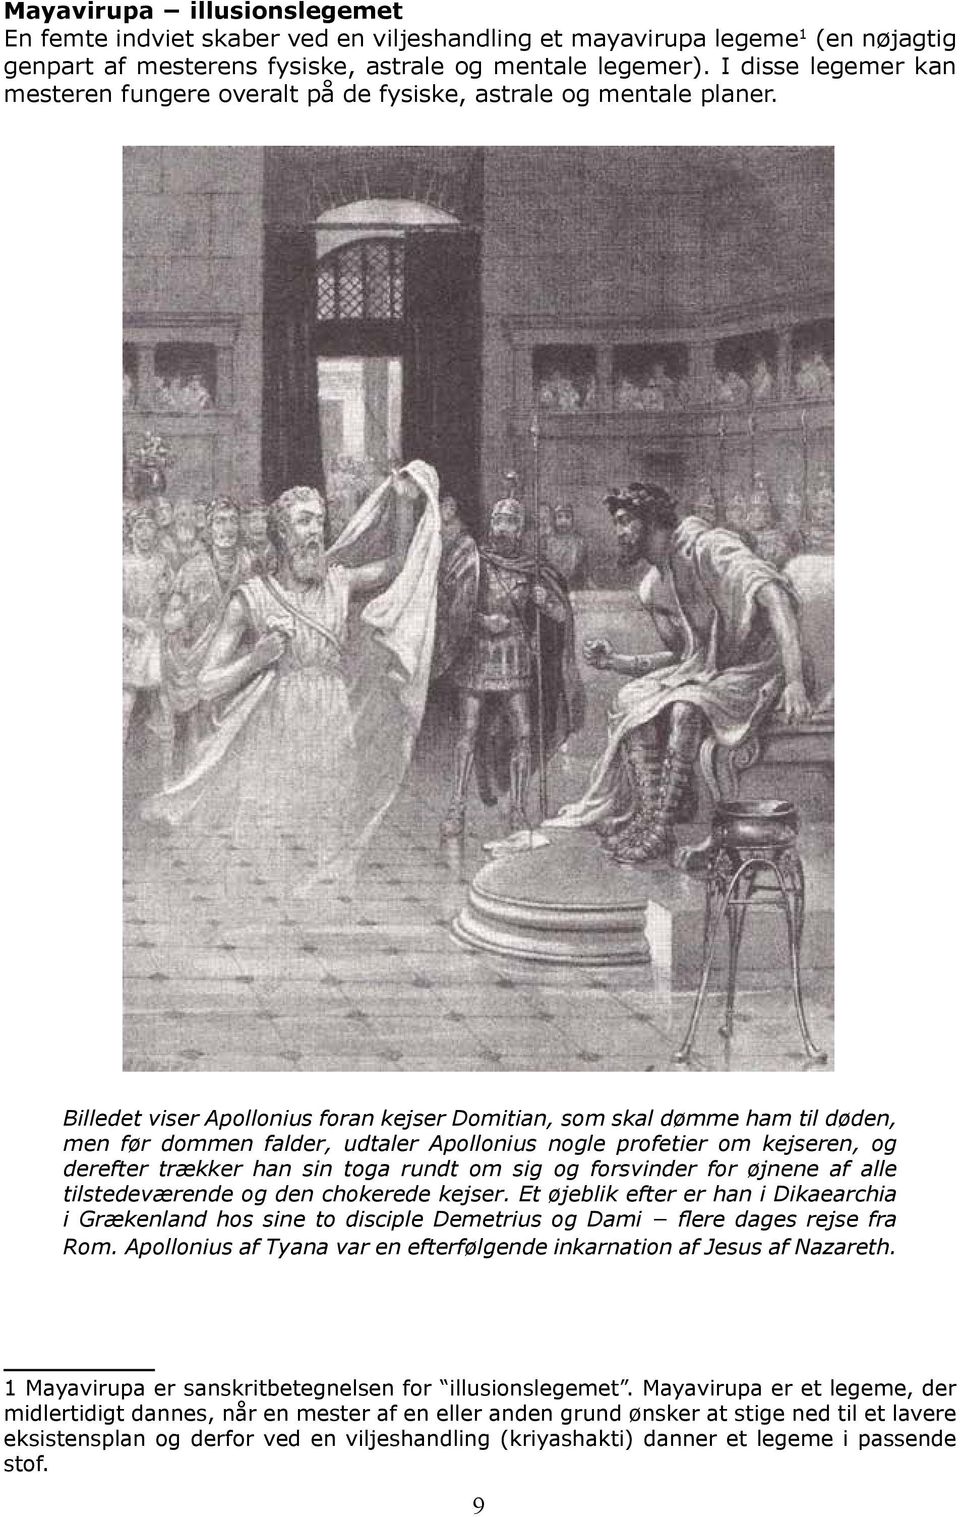 Billedet viser Apollonius foran kejser Domitian, som skal dømme ham til døden, men før dommen falder, udtaler Apollonius nogle profetier om kejseren, og derefter trækker han sin toga rundt om sig og